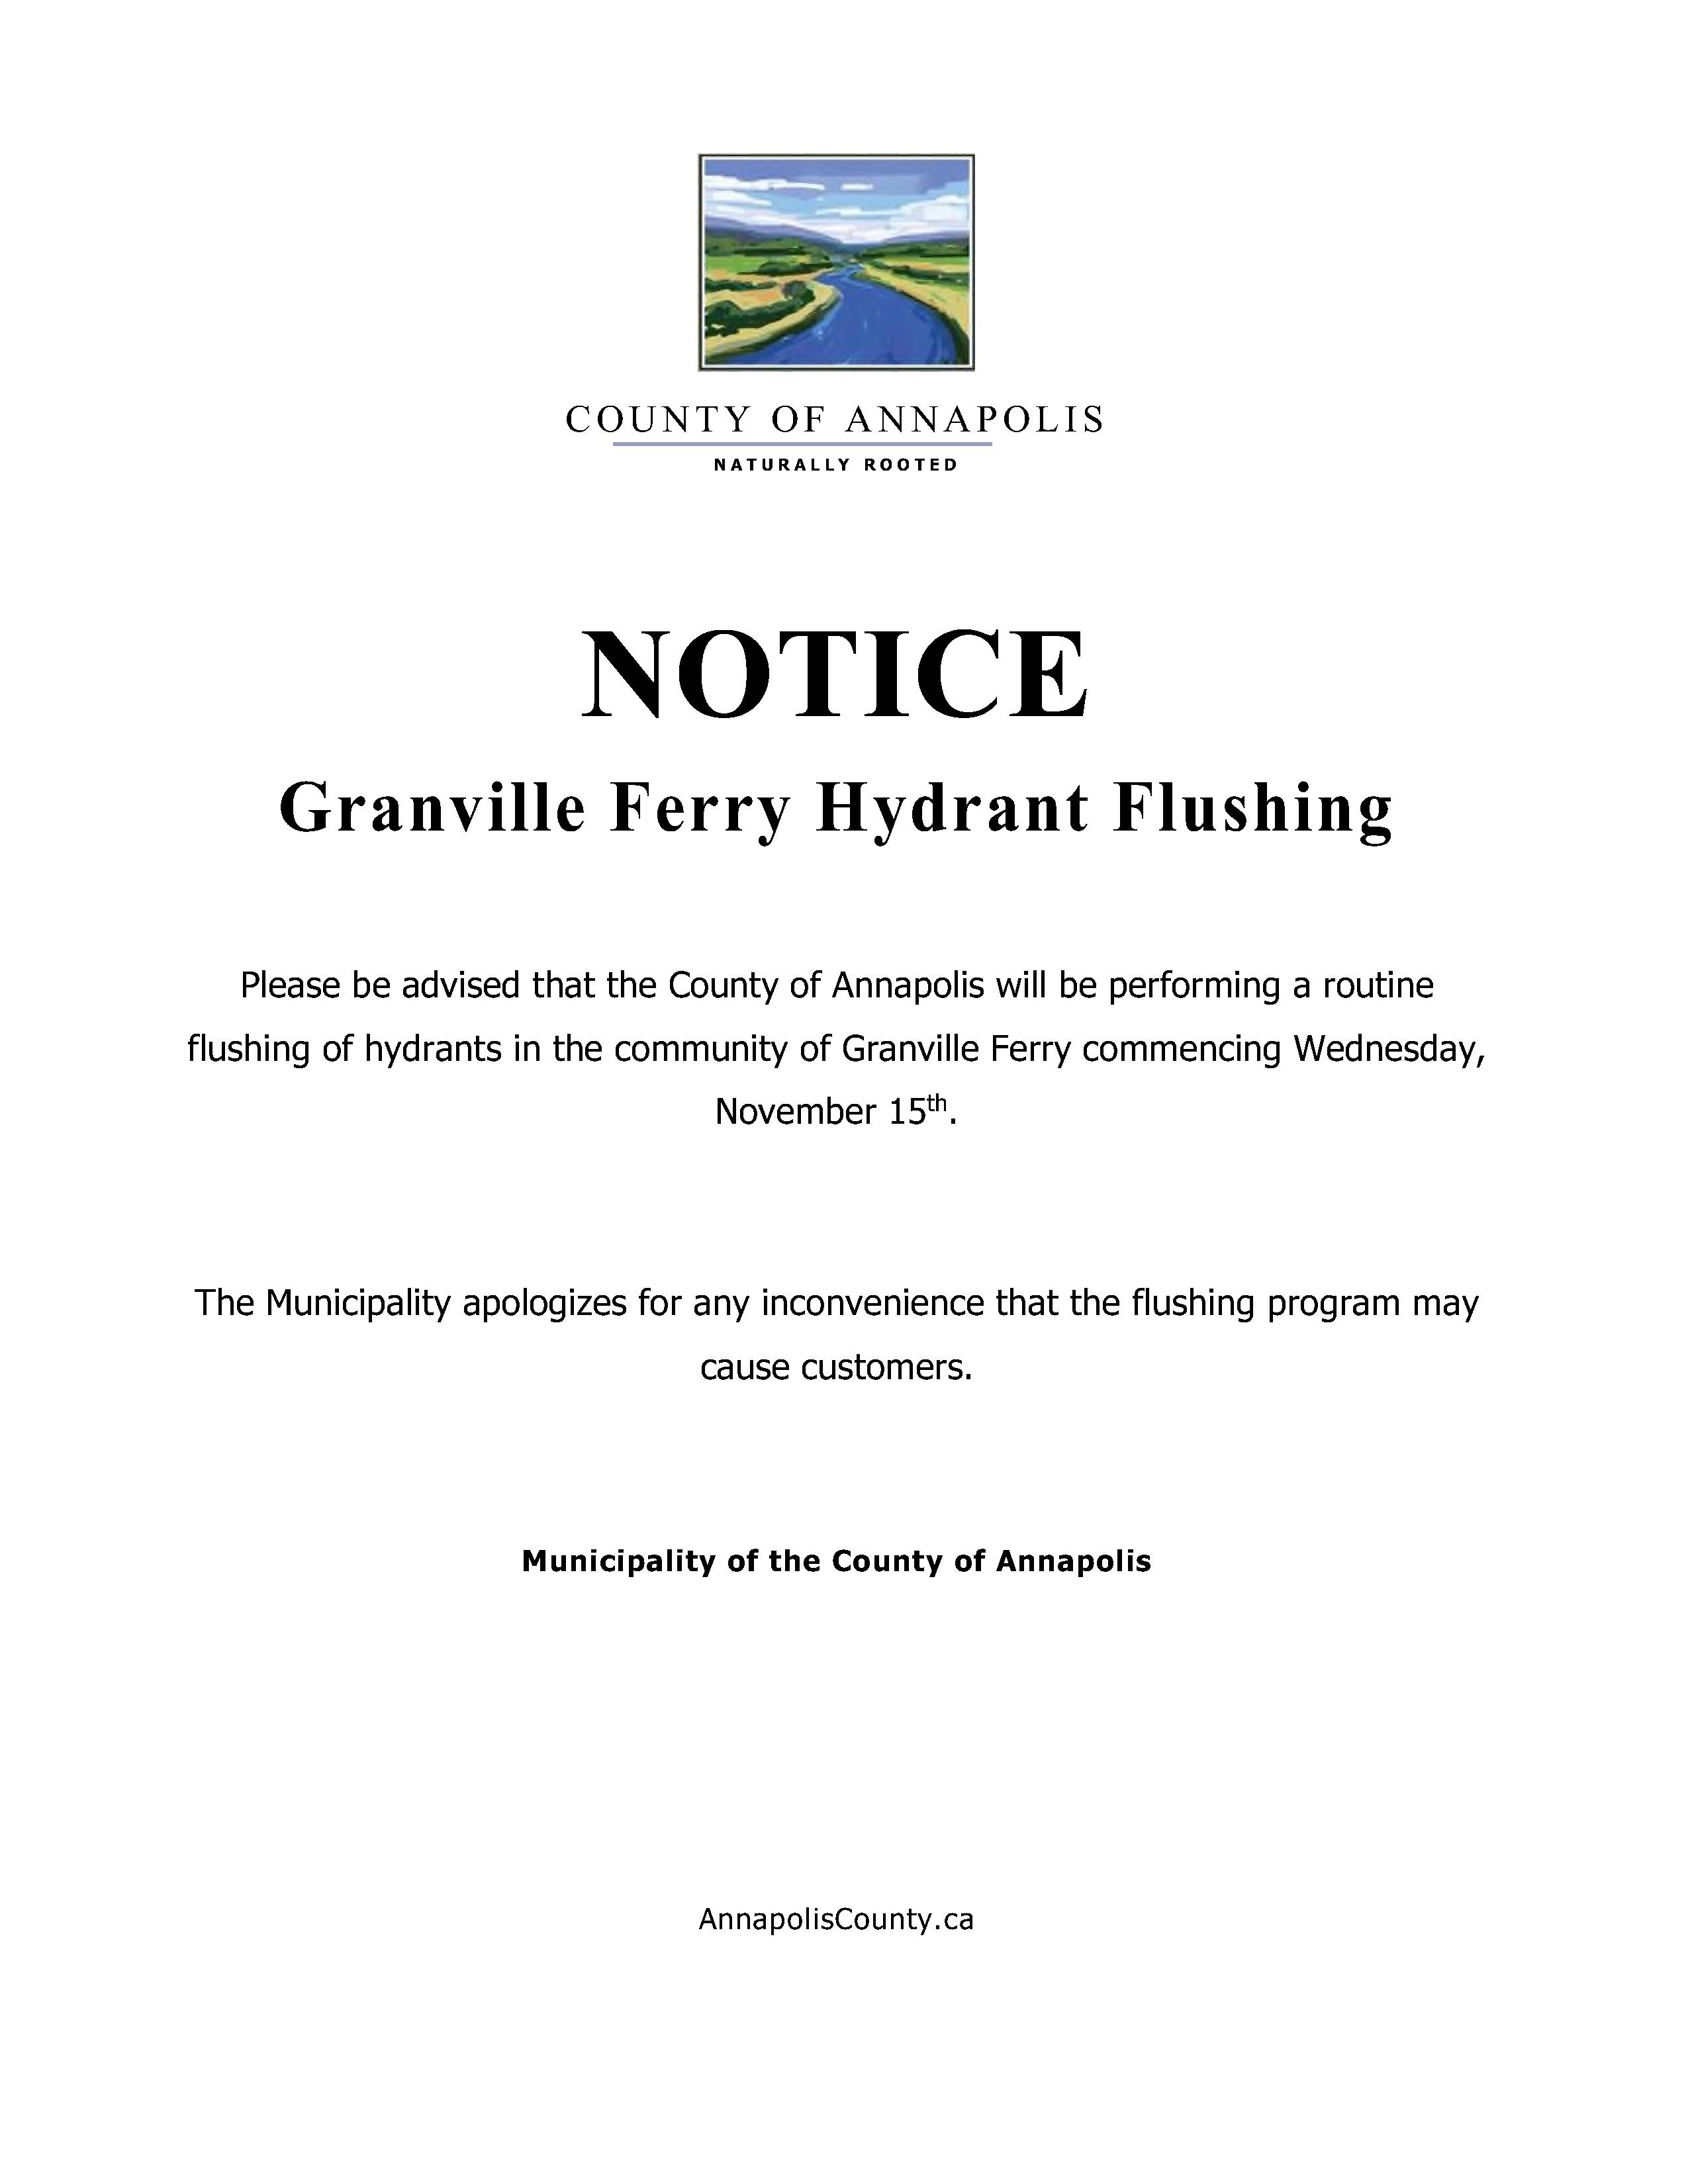 granville ferry flushing Nov 15